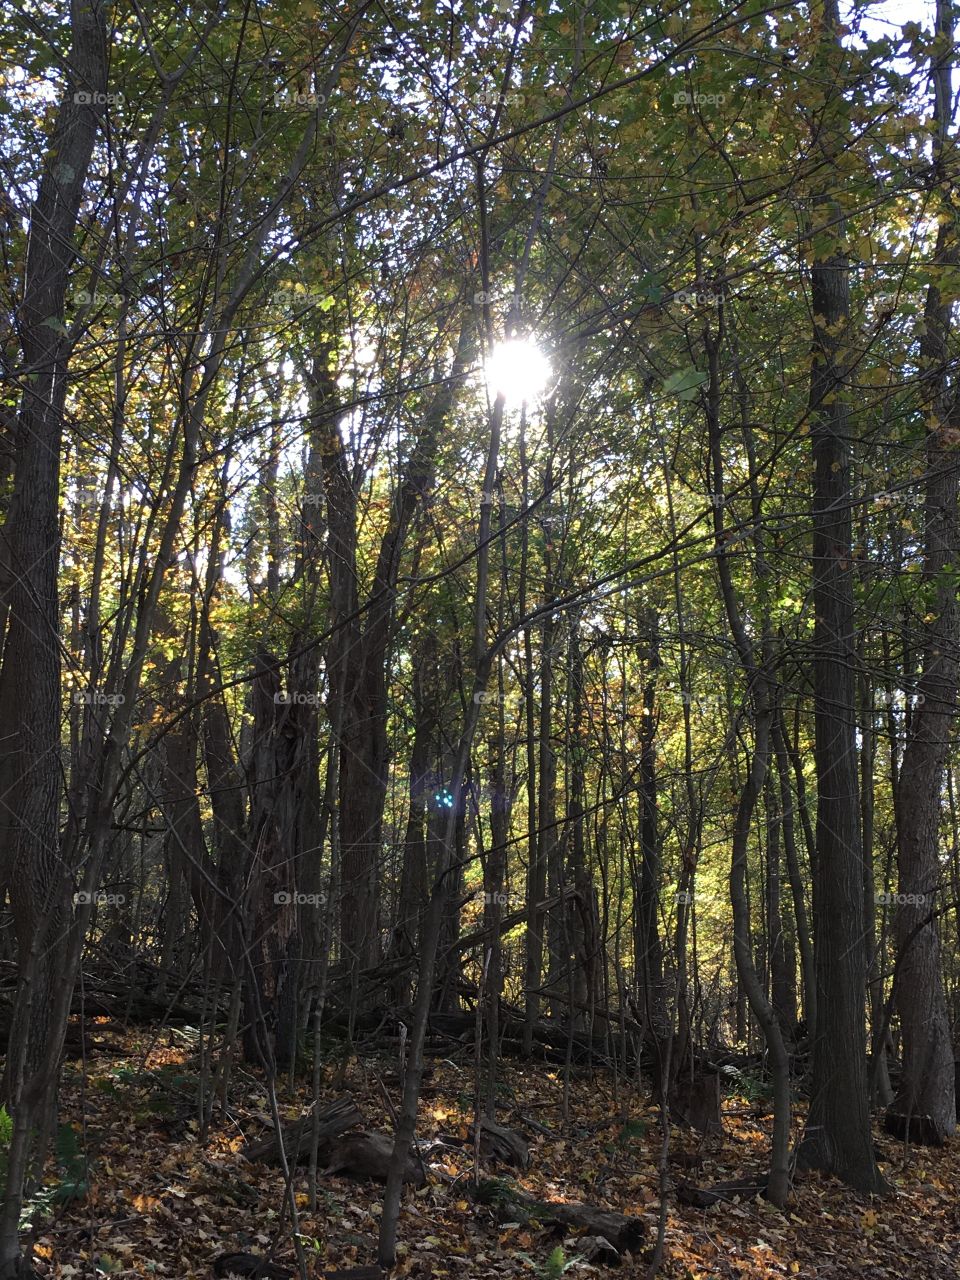 Sunlight peeking through trees